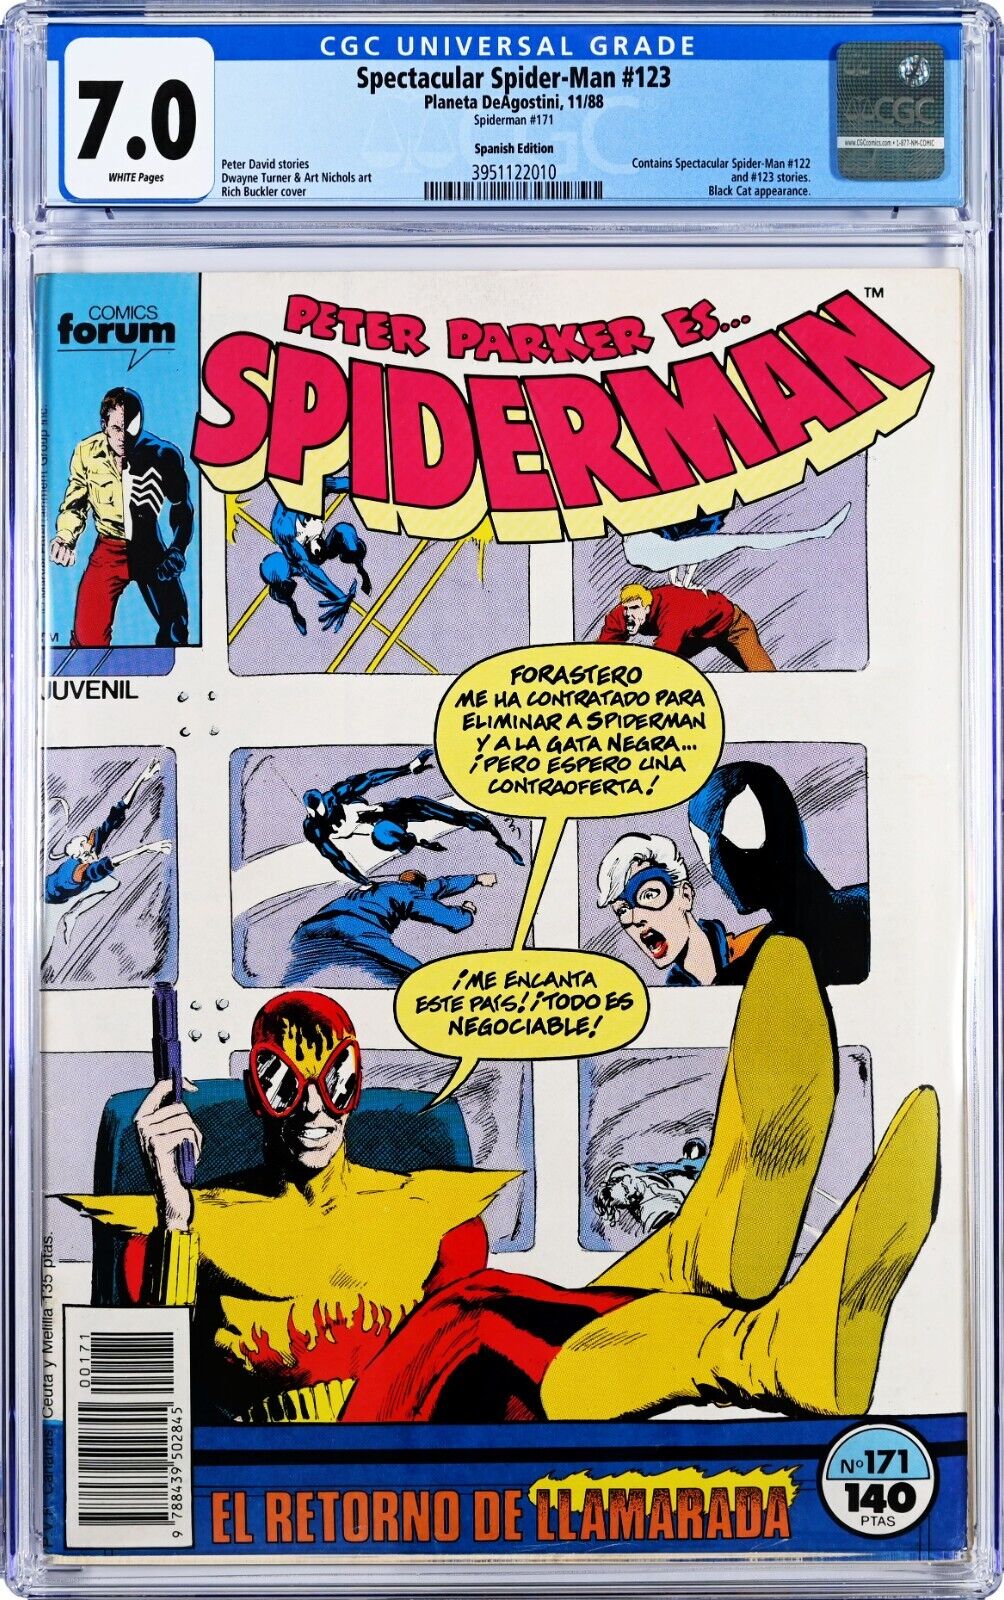 Peter Parker Es Spiderman #171 CGC 7.0 (Nov 1988, DeAgostini) Spanish Edition